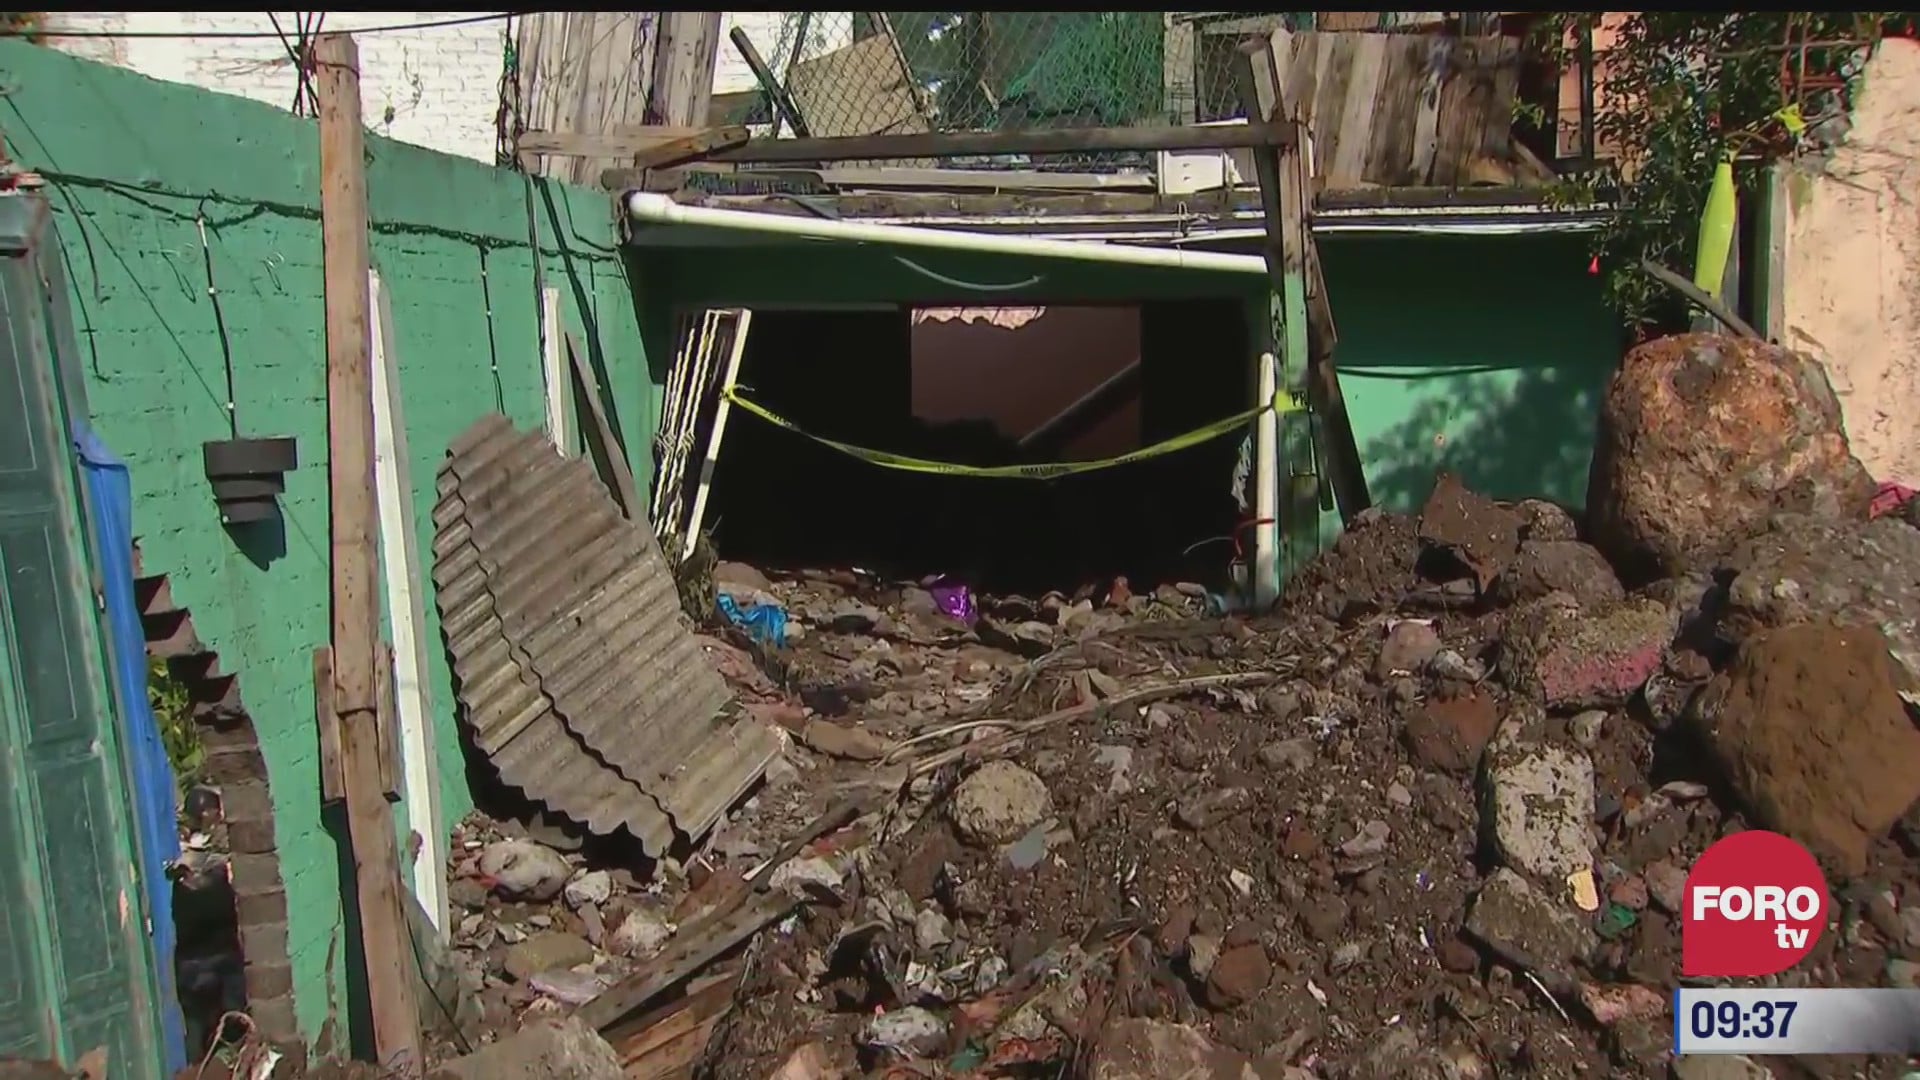 casa de familia vargas queda enterrada por inundaciones en ecatepec estado de mexico